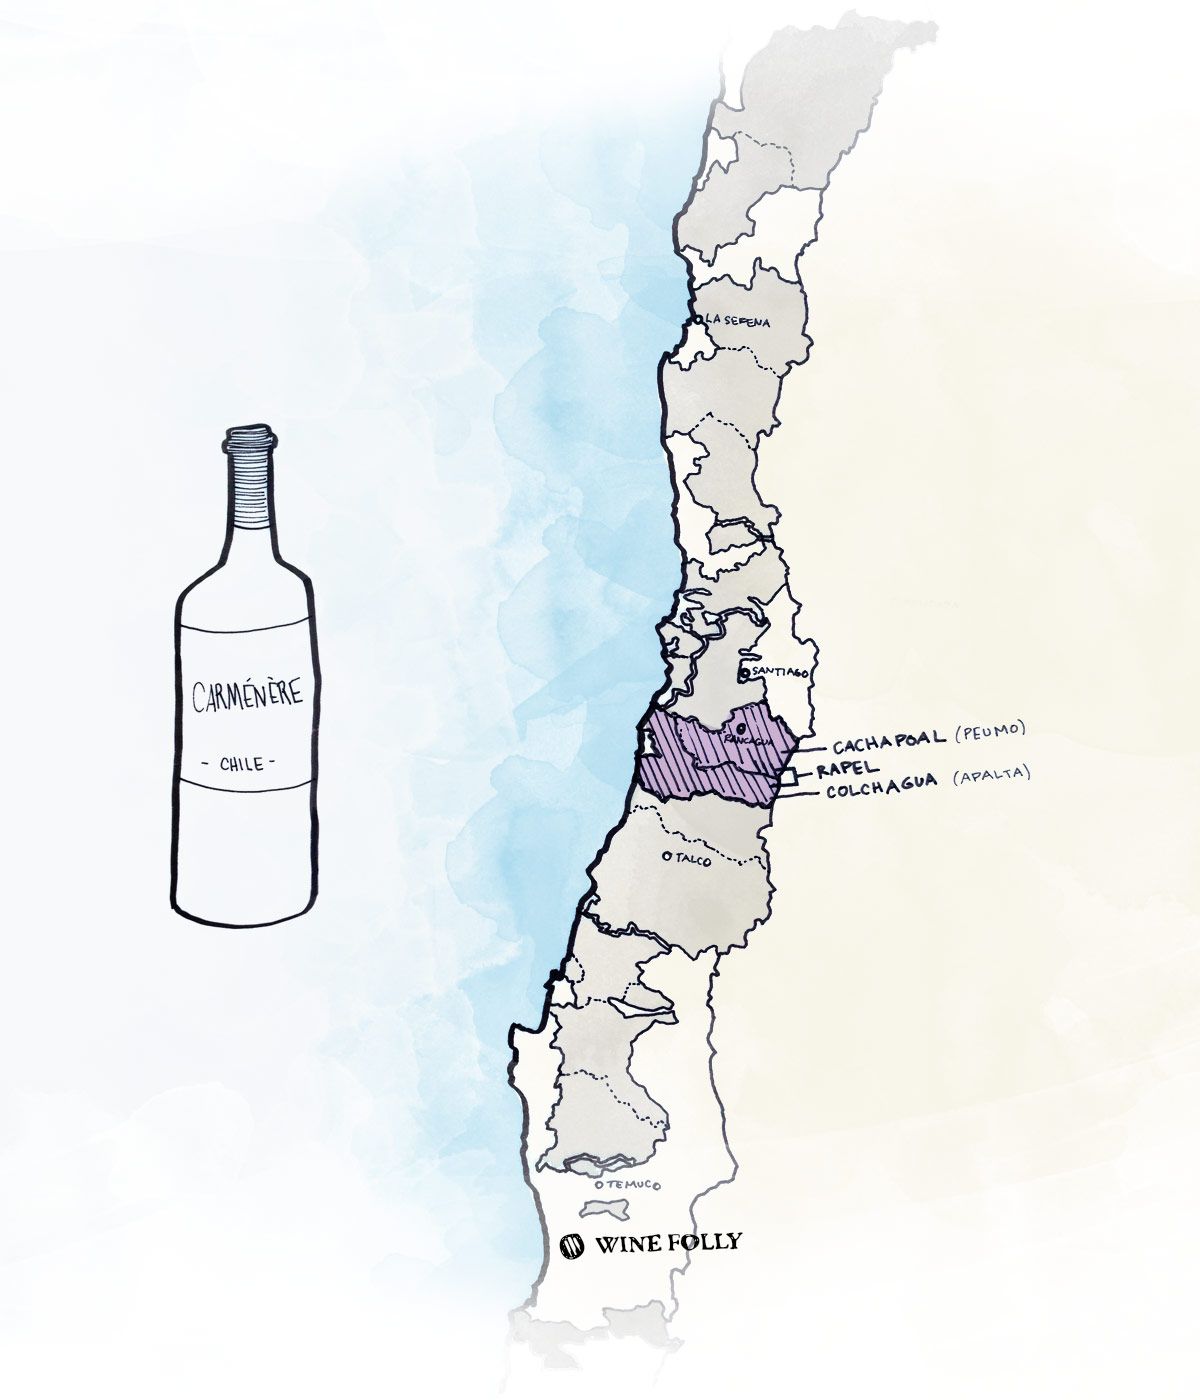 Najboljša vinska regija v Čilu za rdeče vino Carmenere